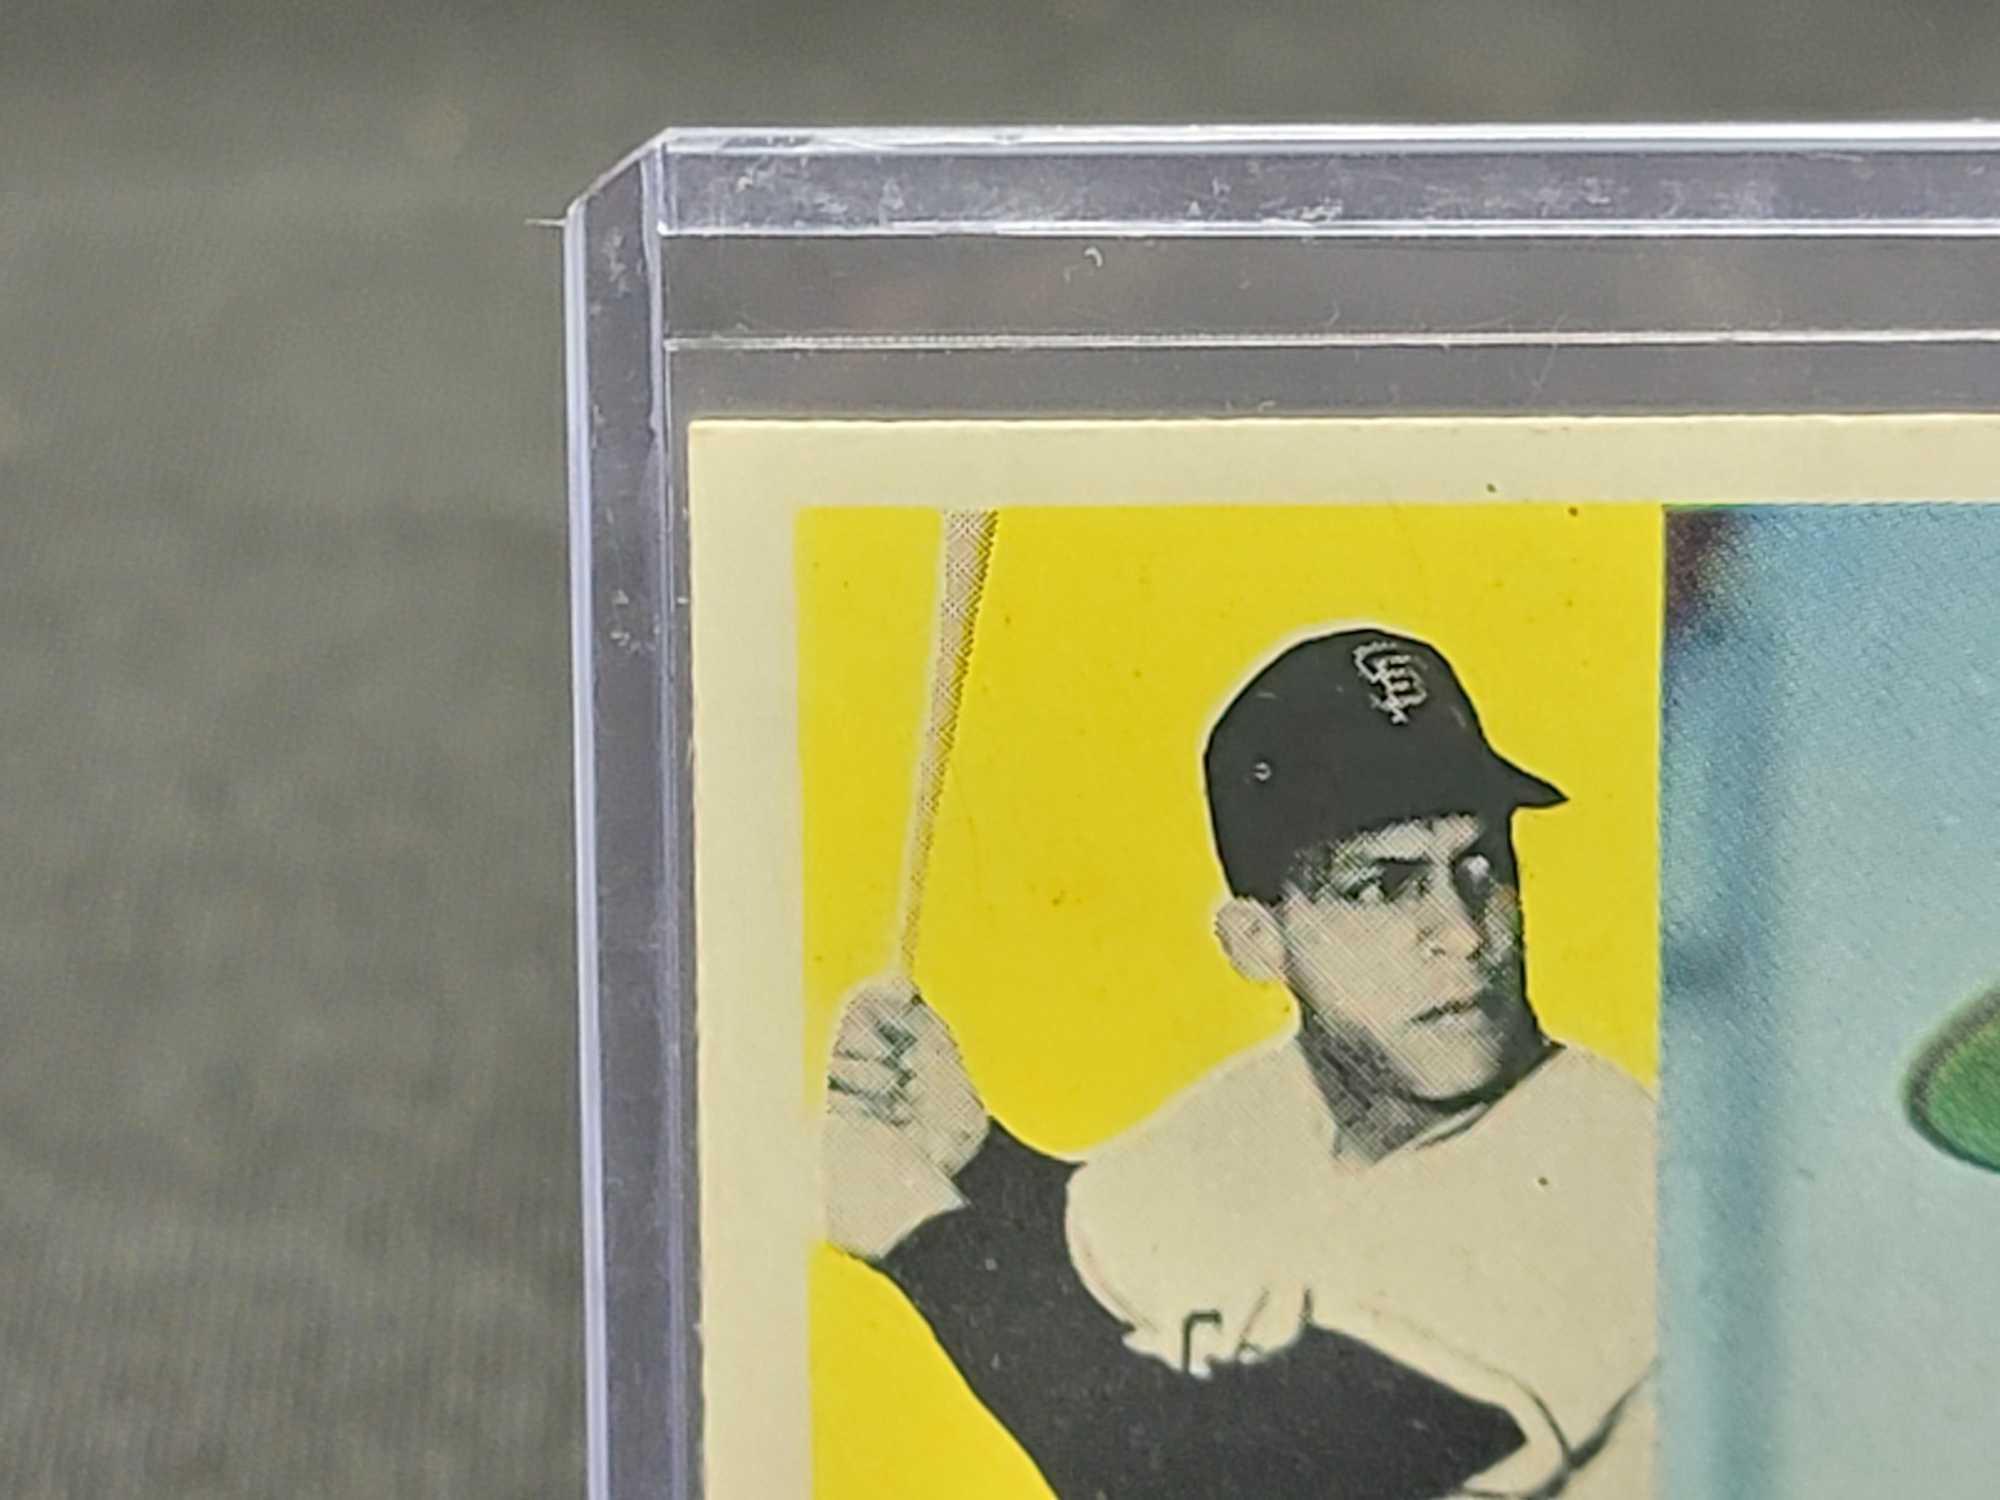 1960 Orlando Cepeda Topps Baseball Card NICE